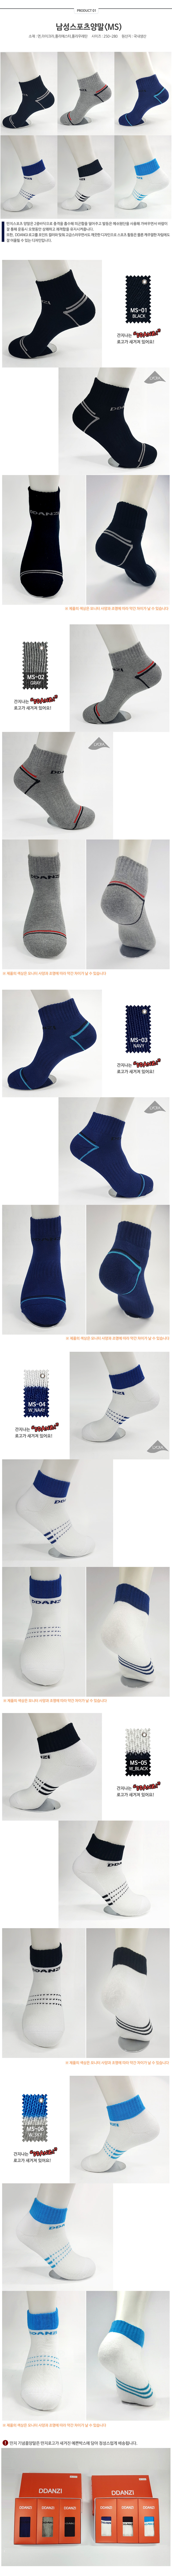 socks_01.jpg